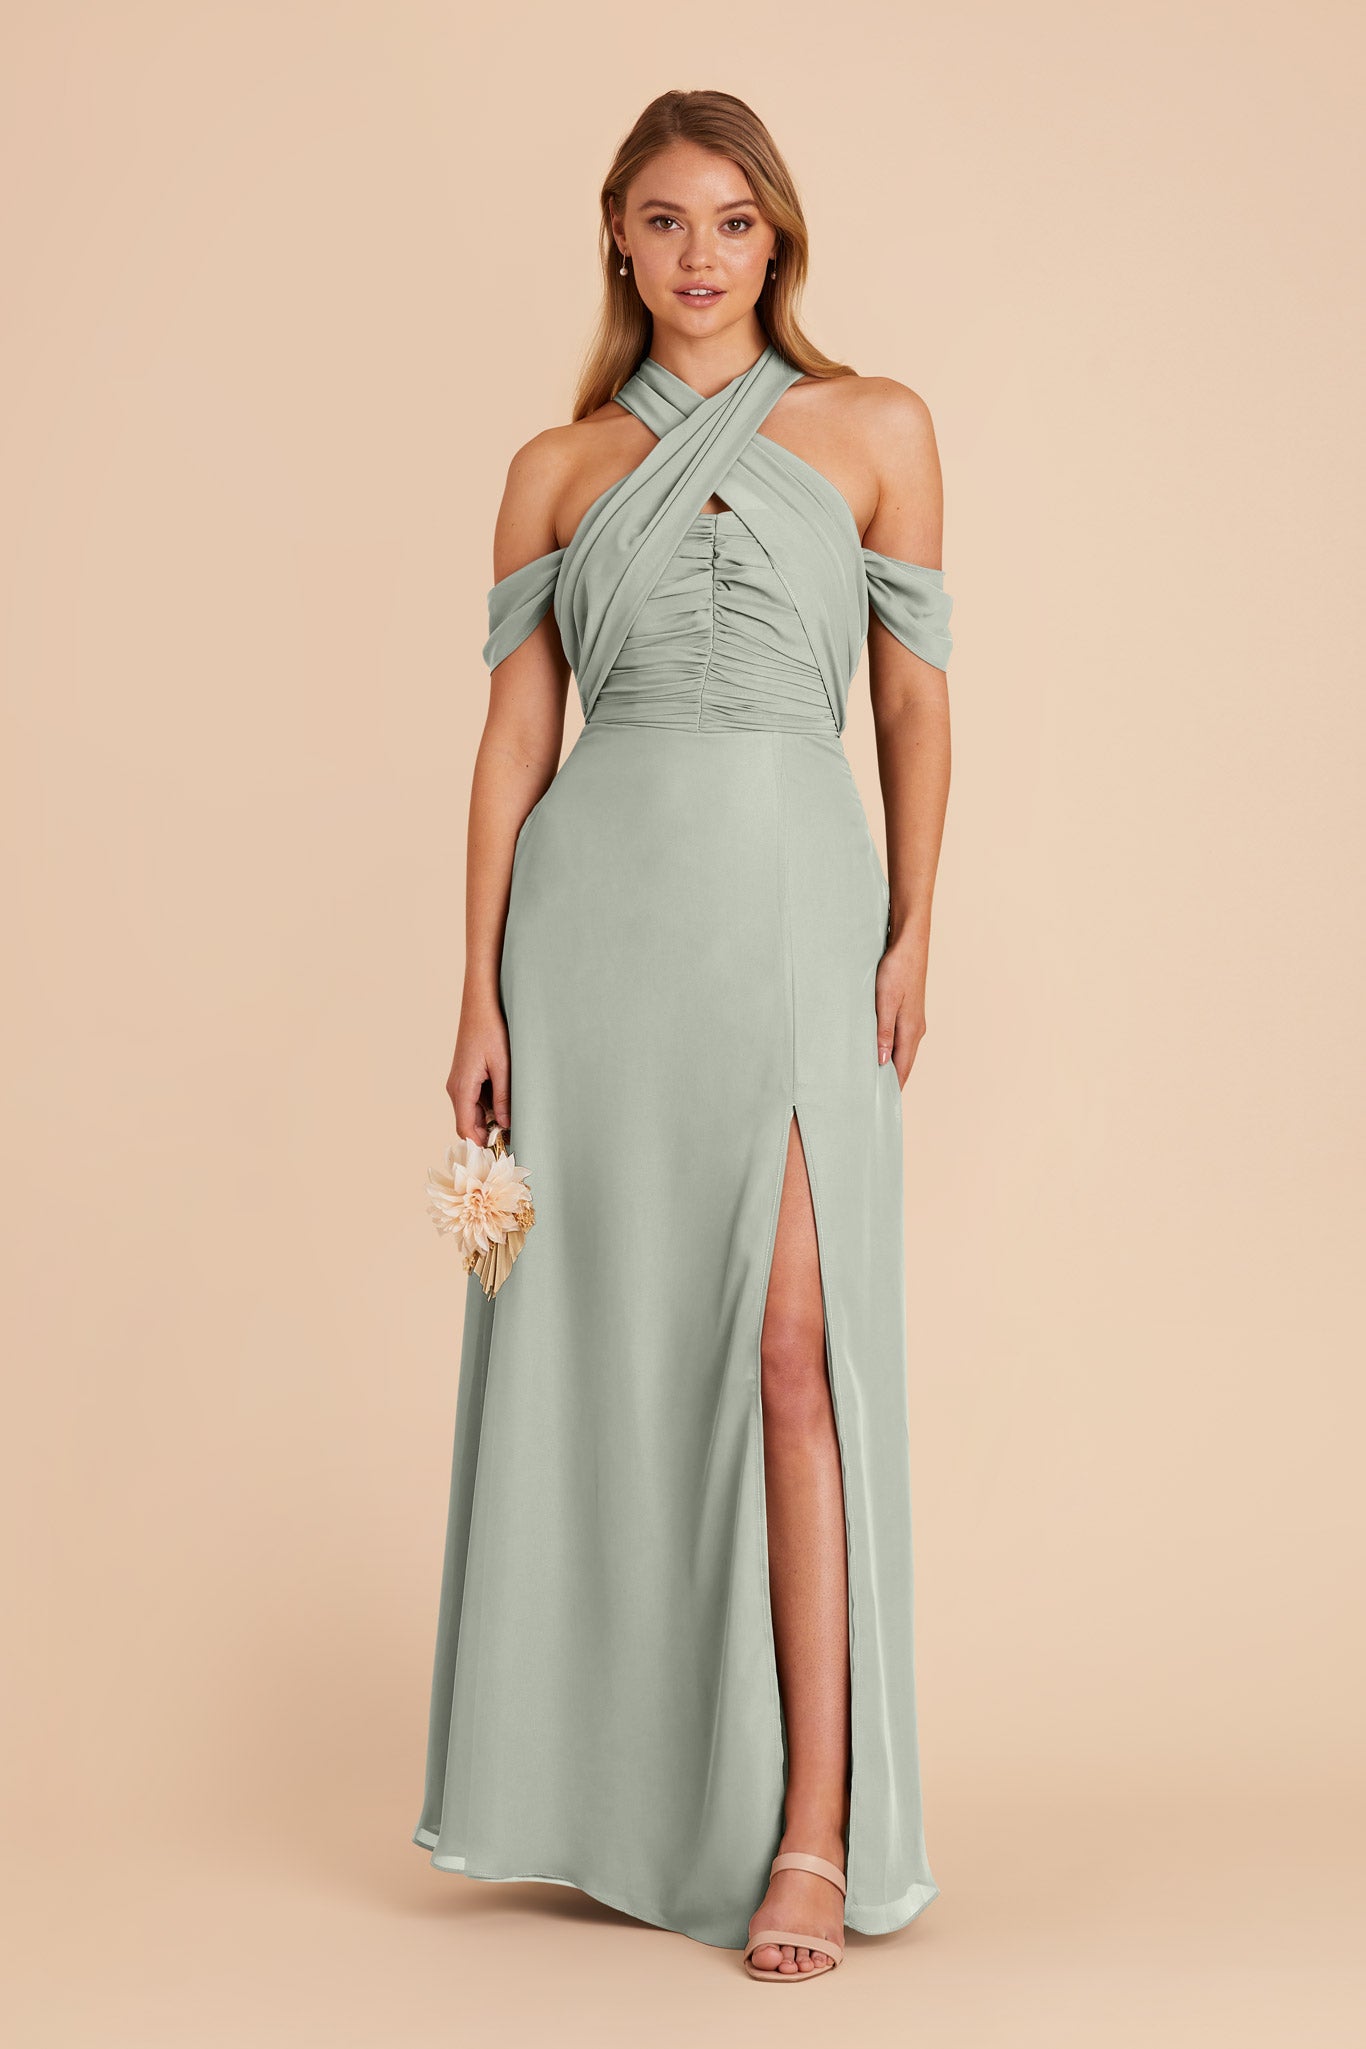 Sage Cara Chiffon Dress by Birdy Grey